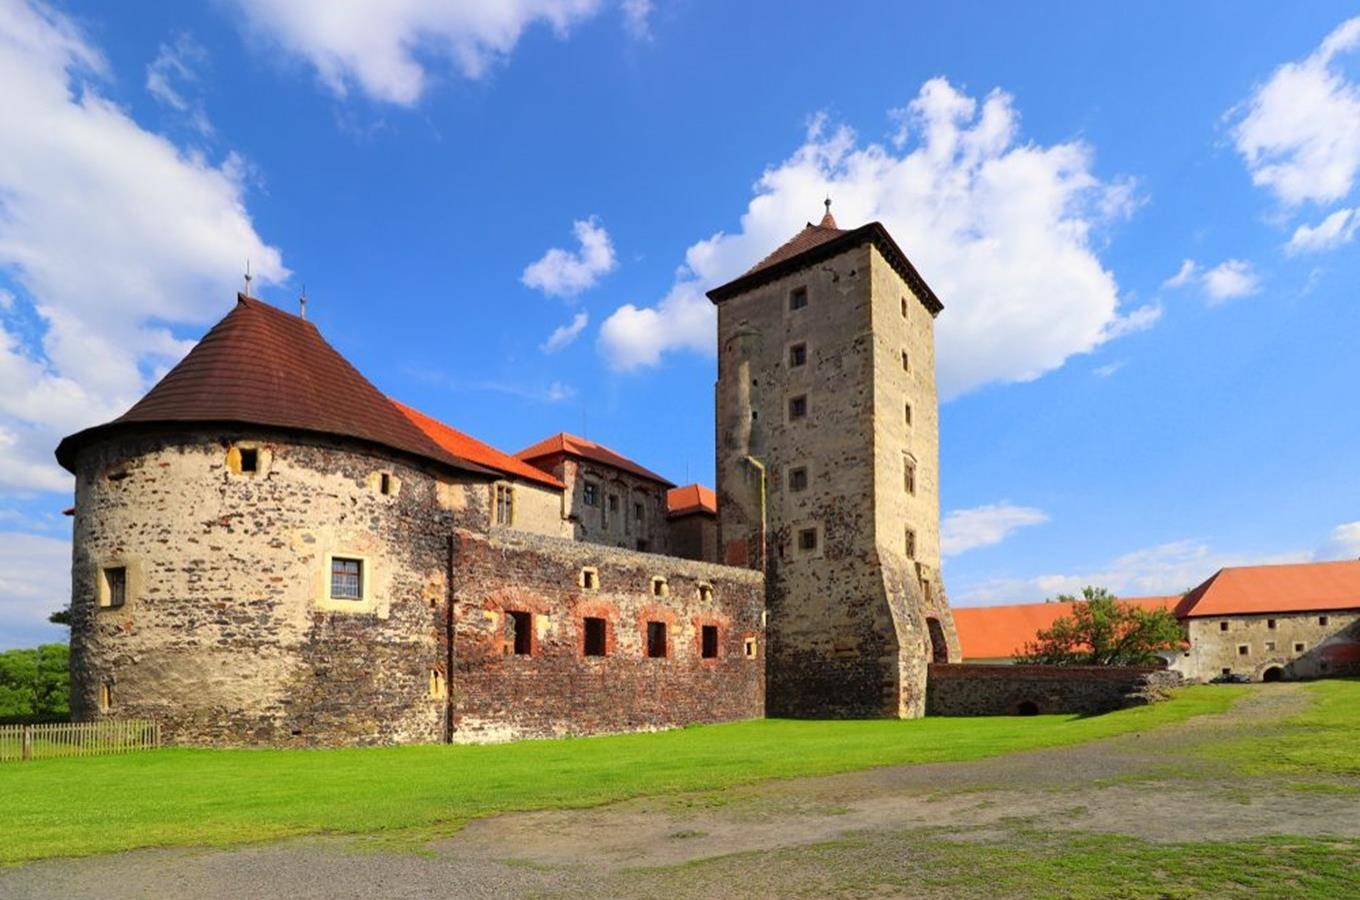 Vstupní věž hradu Švihov s expozicí stavebního vývoje hradu